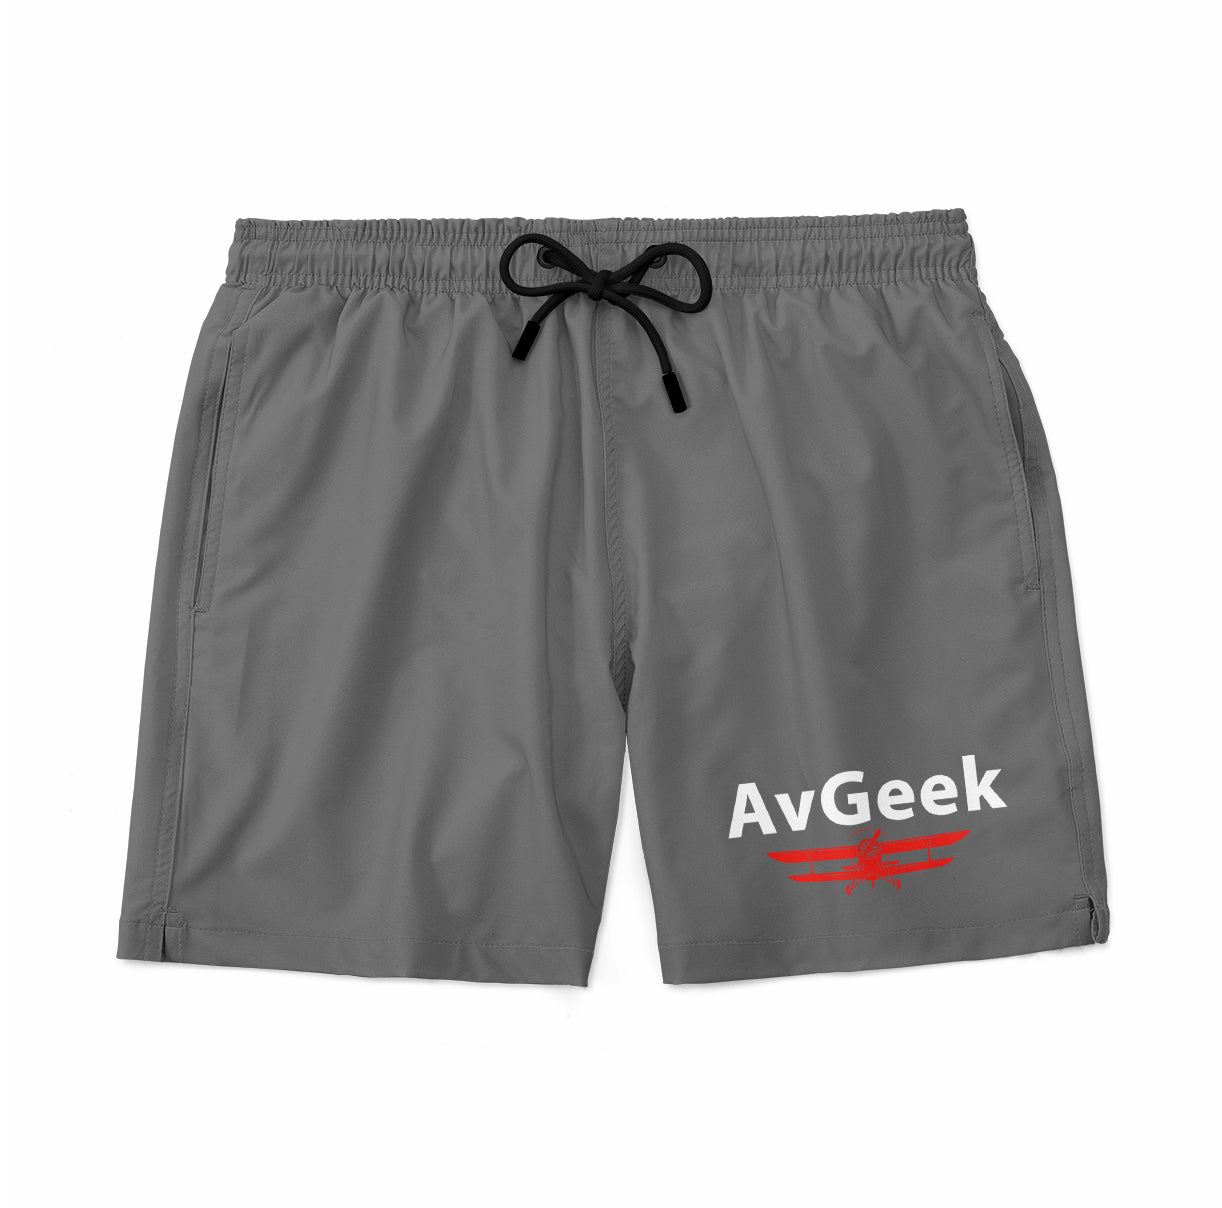 Avgeek Designed Swim Trunks & Shorts